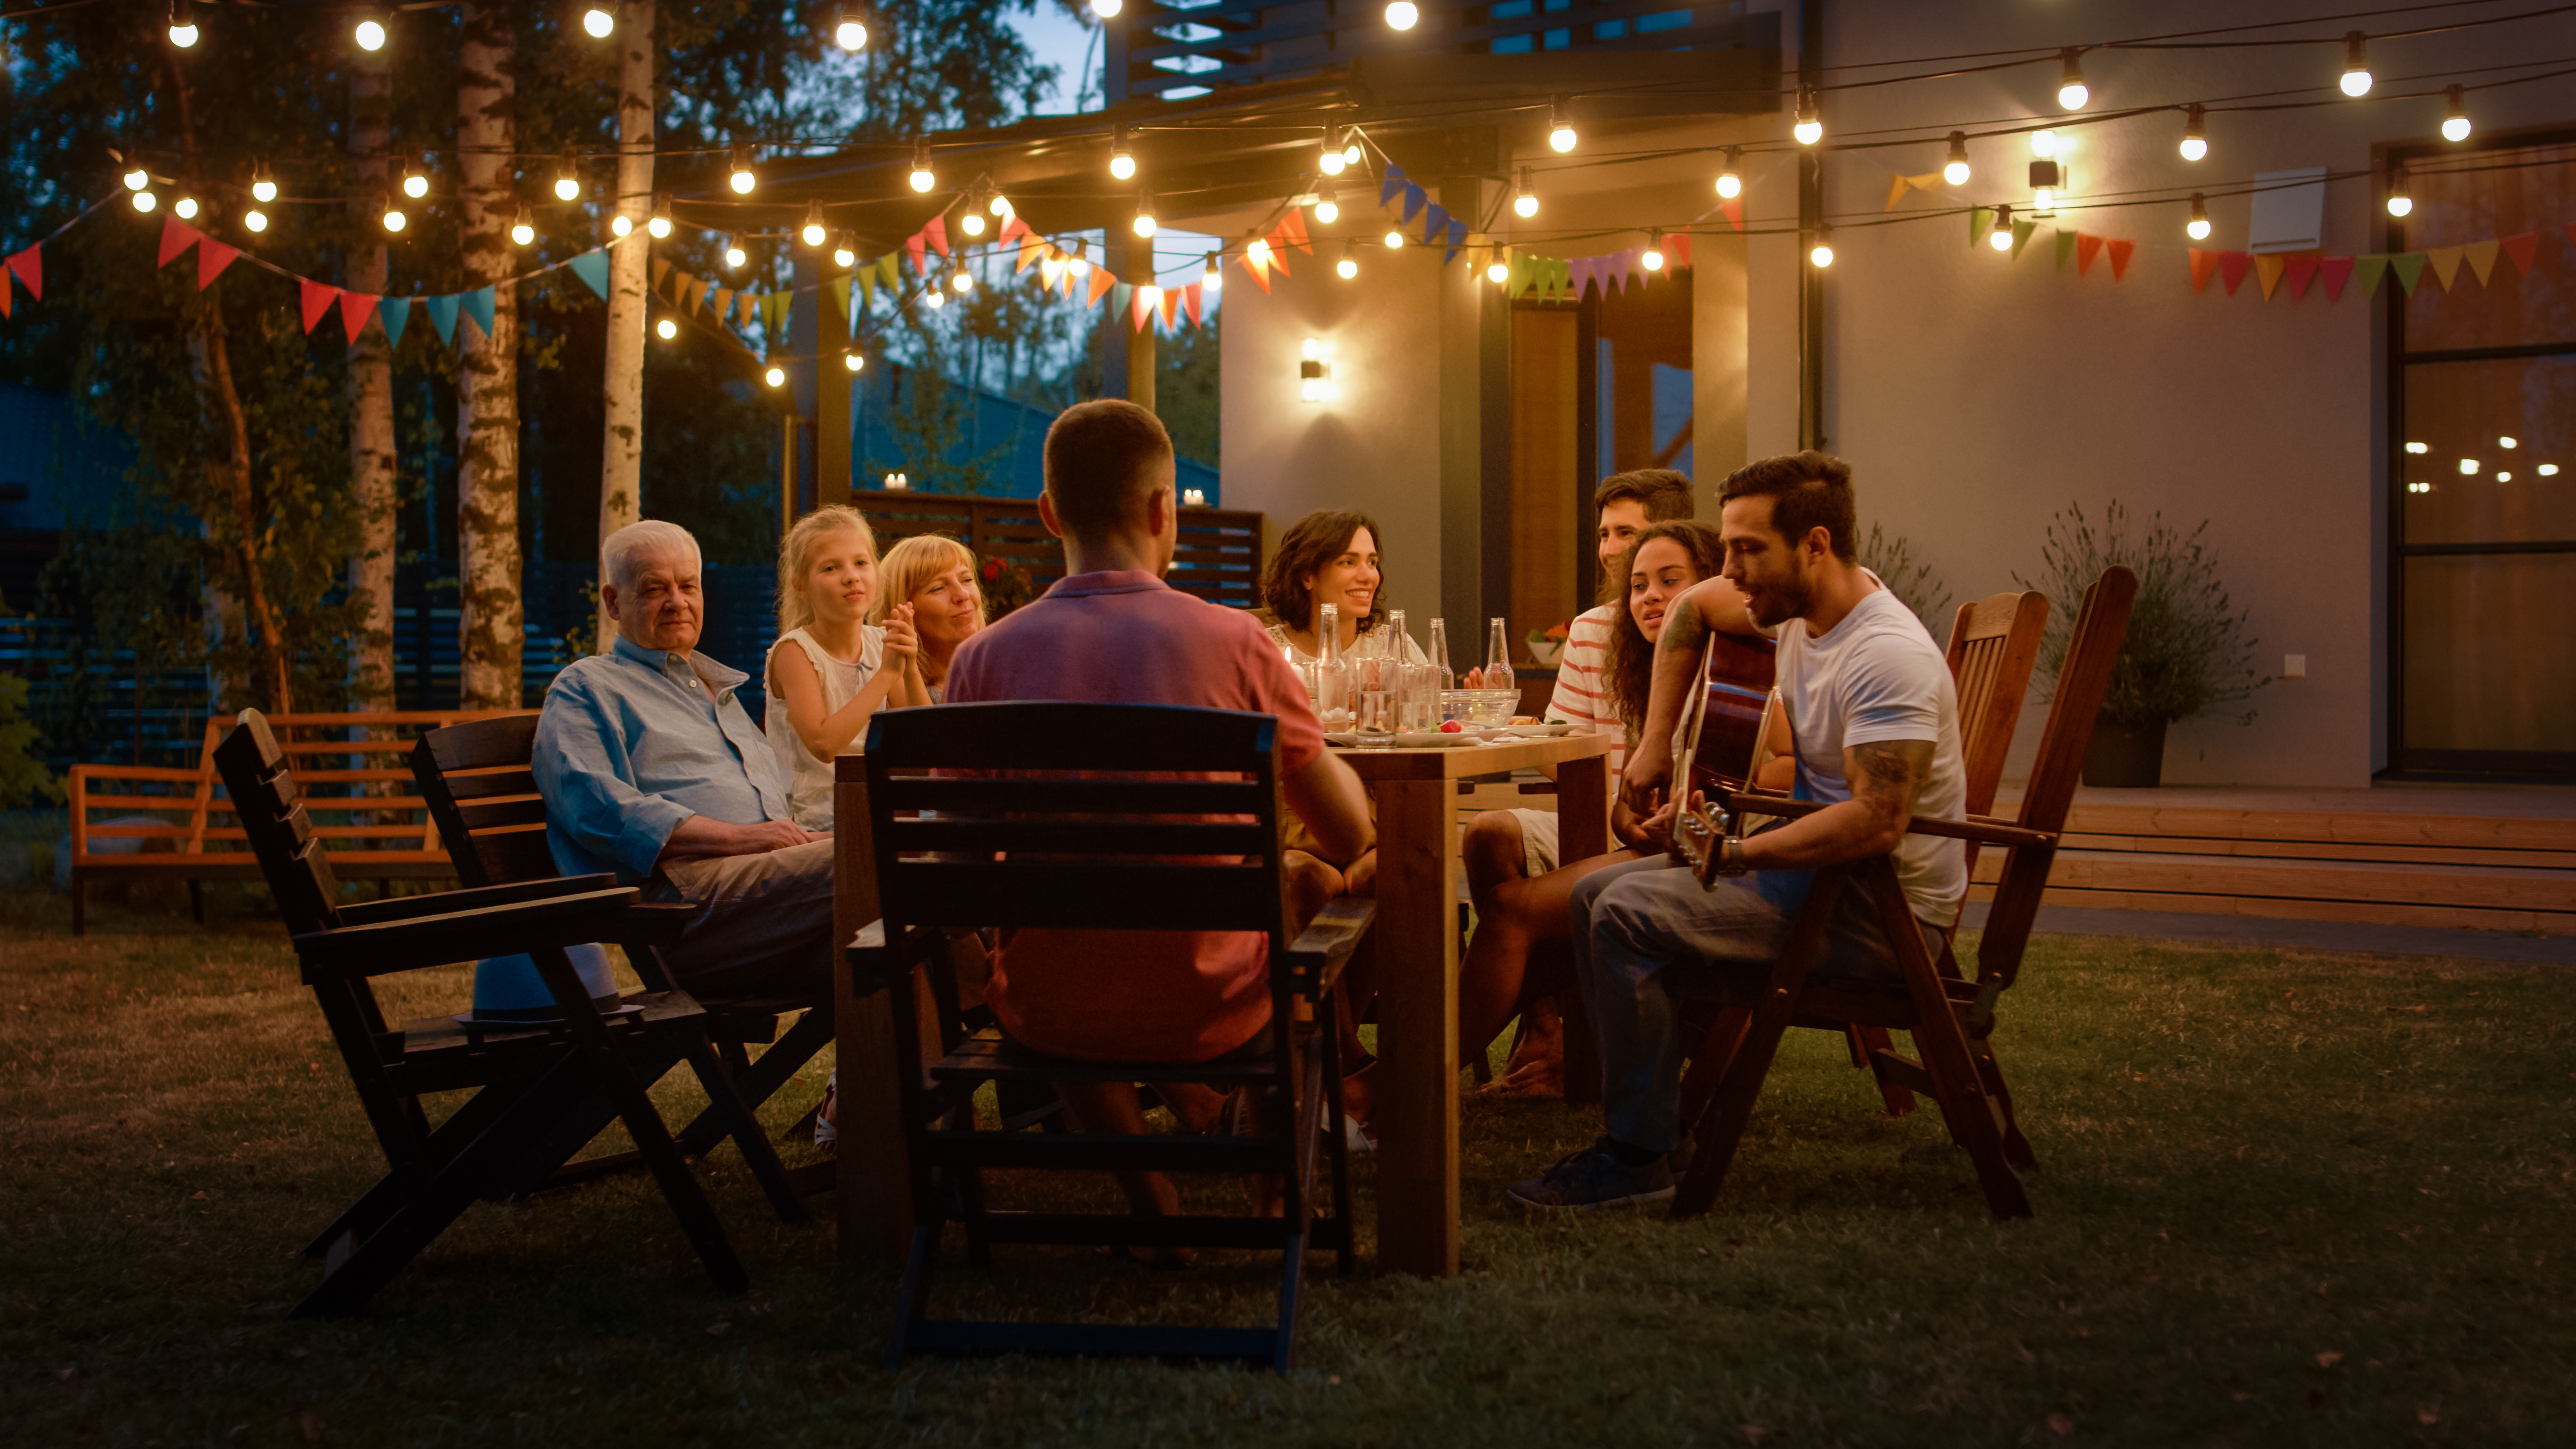 Cozy family dinner | Shutterstock